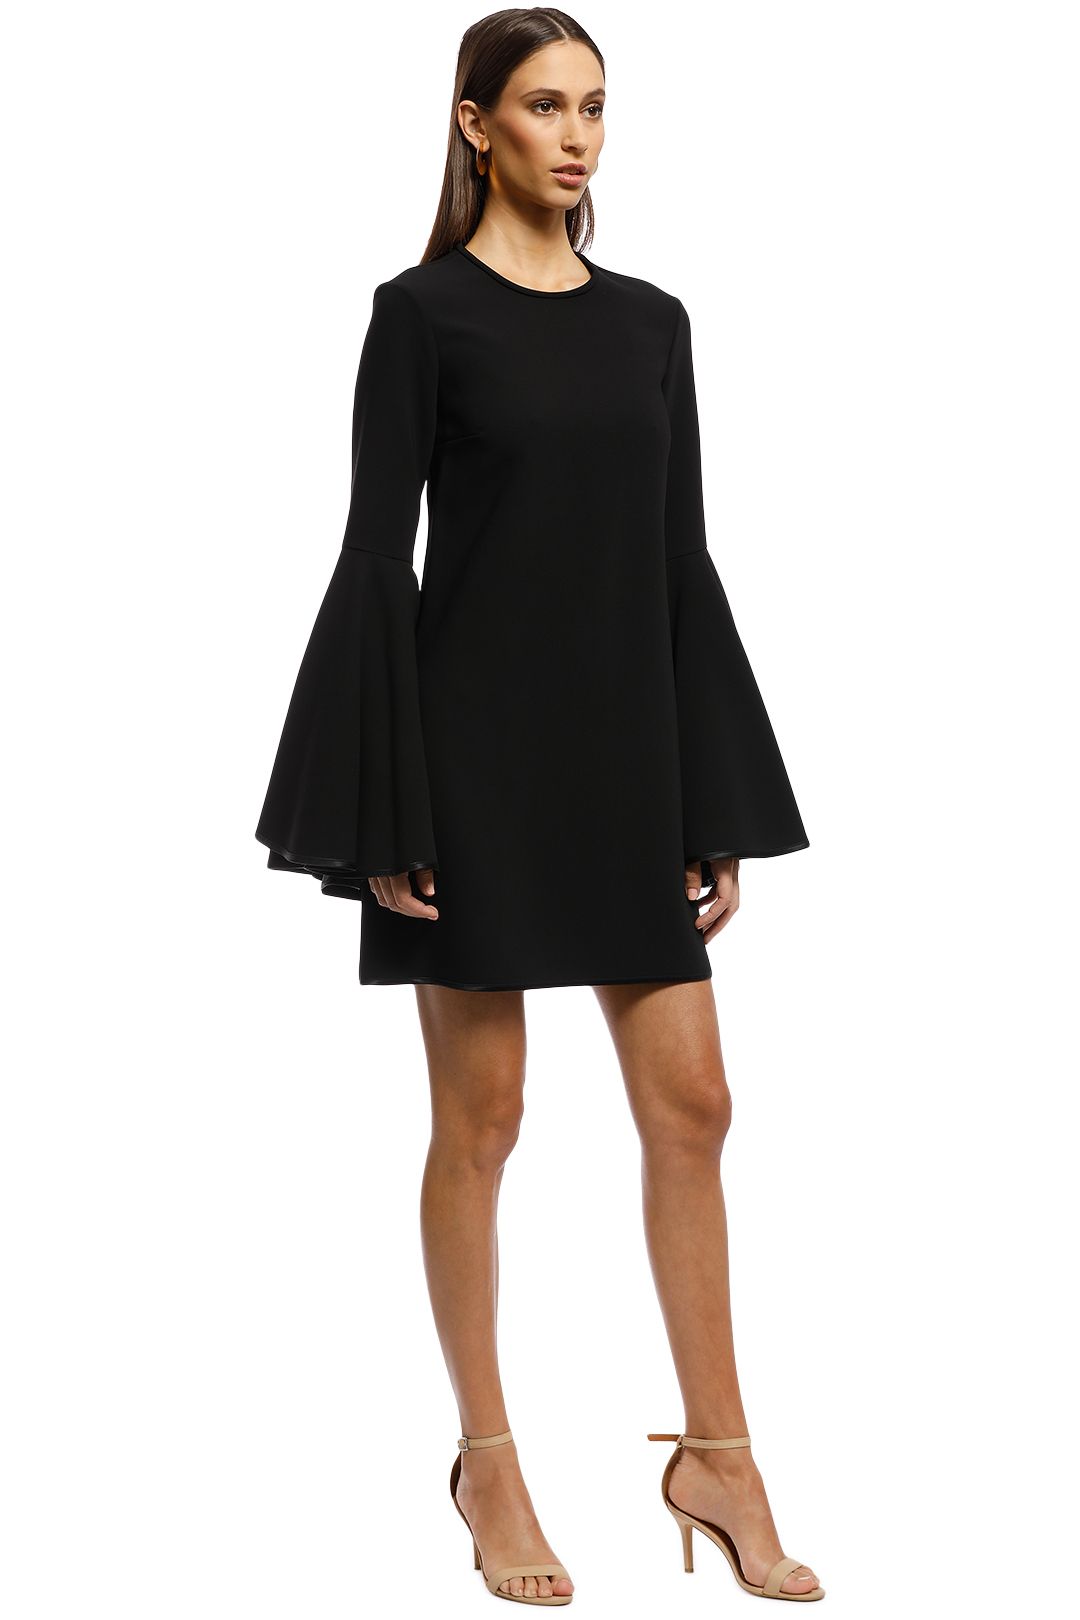 Ellery - Dogma Flare Sleeve Mini Dress - Black - Side